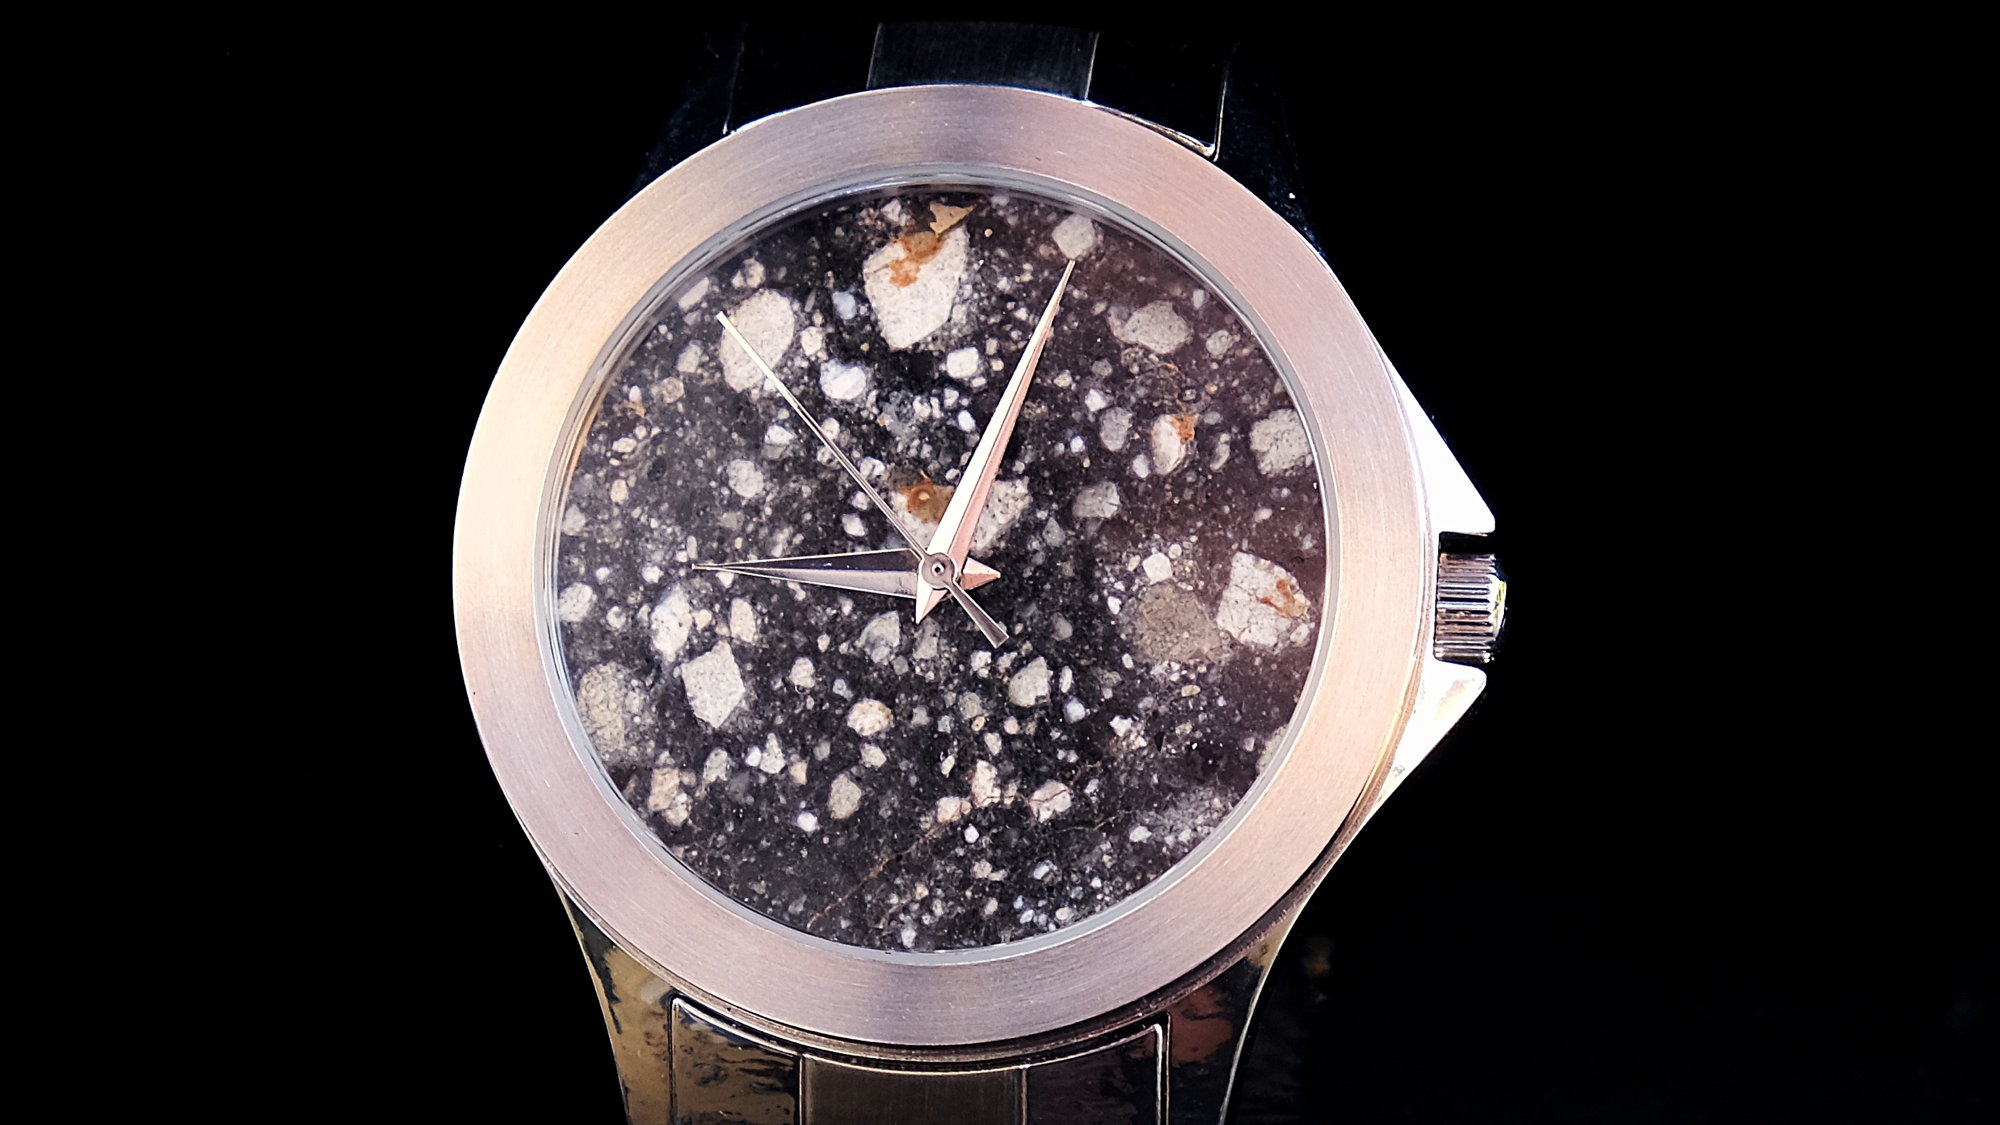 Original laguiole - Space Watch 02, Luxus Armbanduhr mit Mond-Meteoriten als Zifferblatt